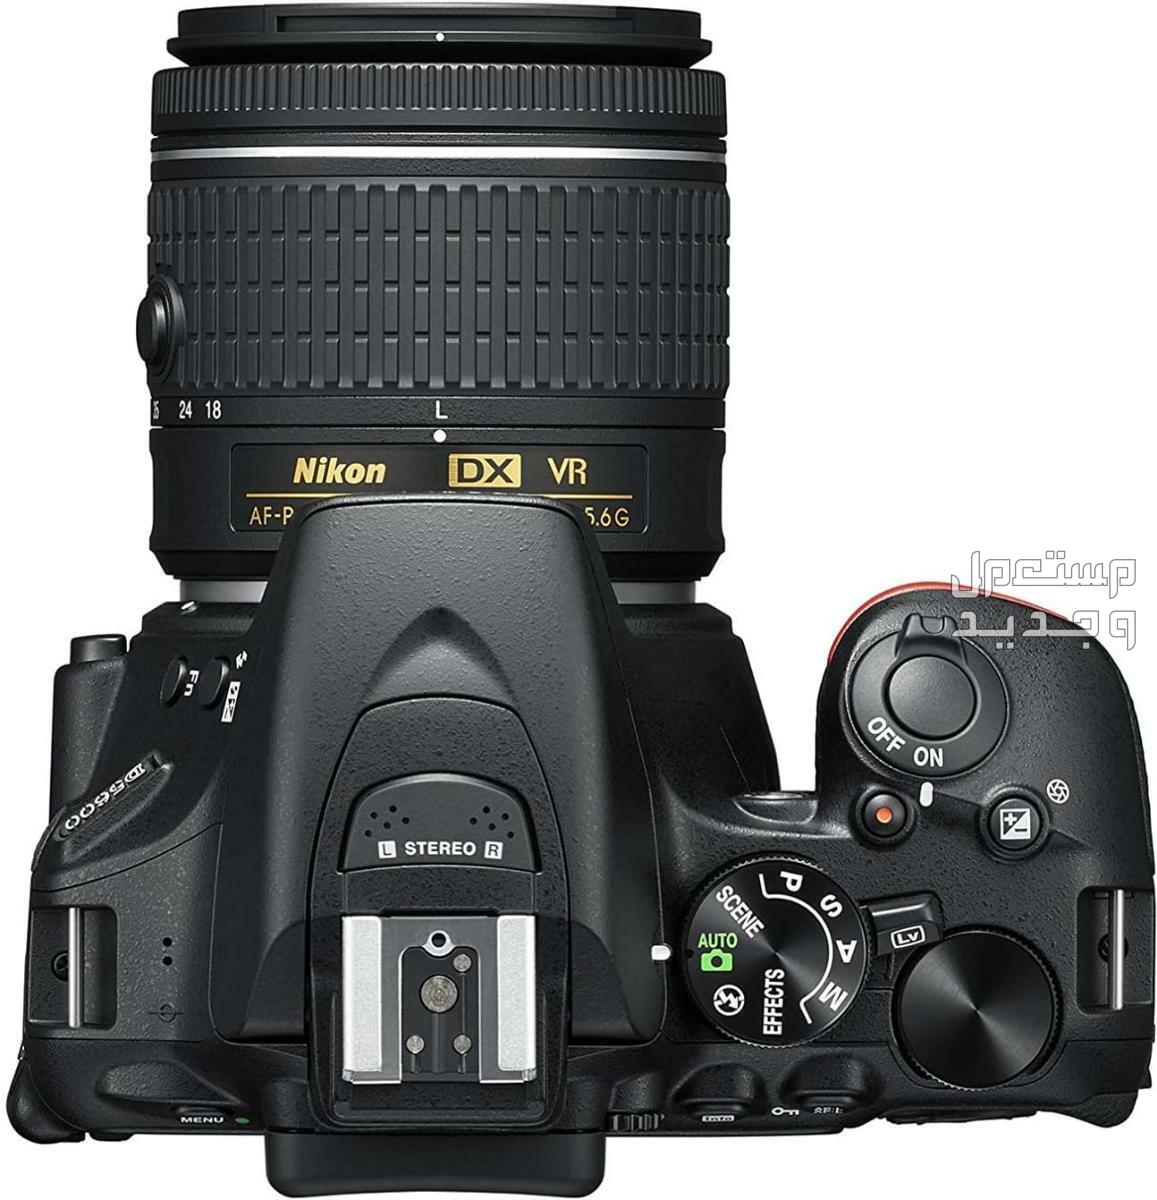 10 كاميرات تصوير ماركات عالمية بأسعار رخيصة في مصر مميزات كاميرا Nikon D5600